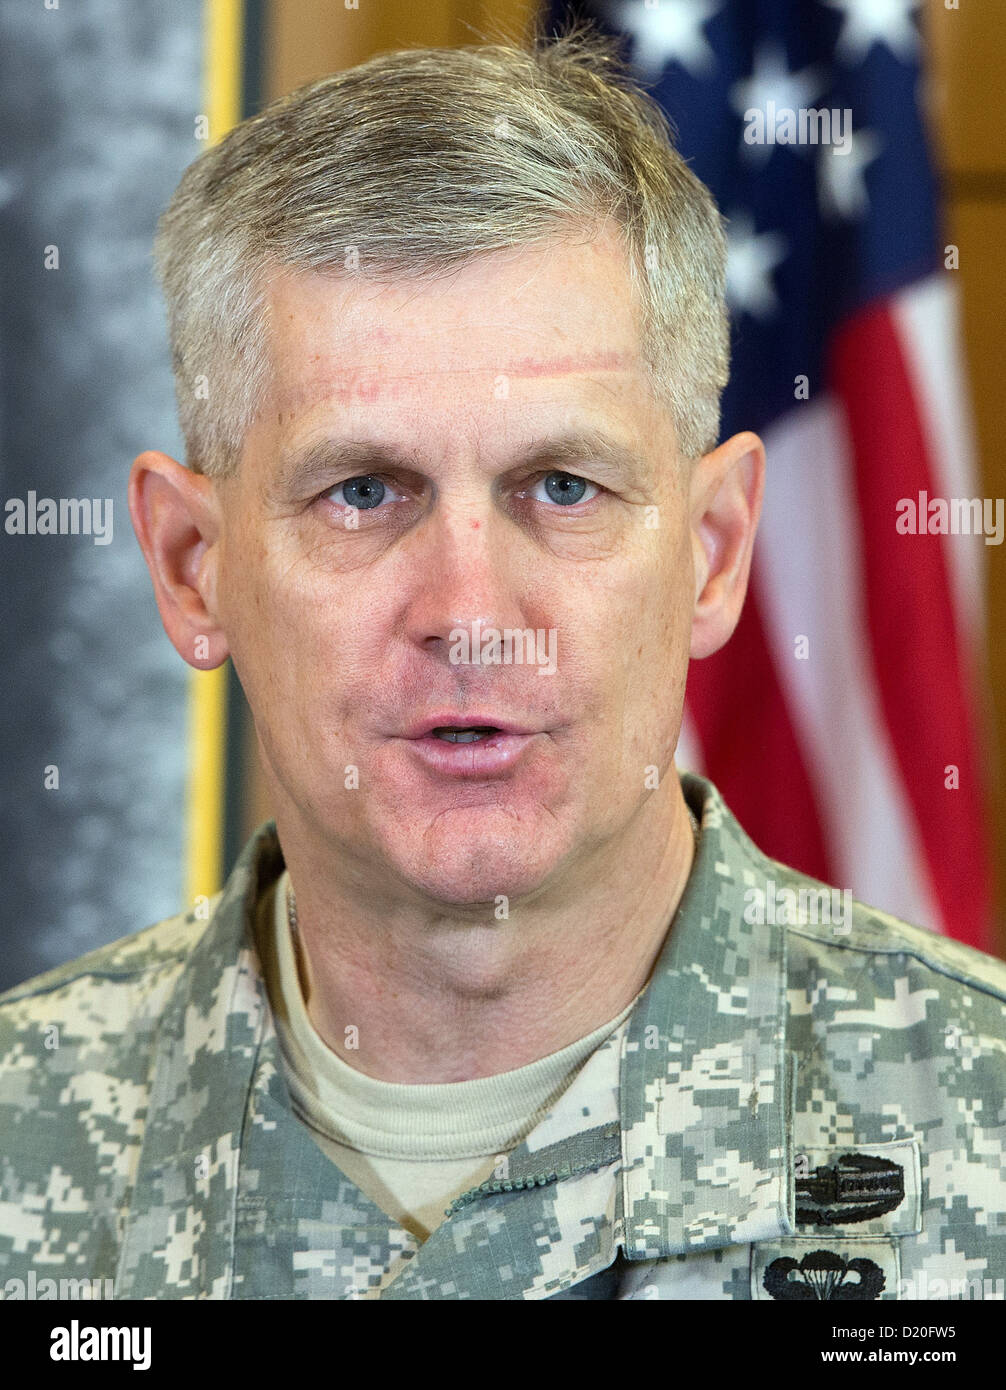 El teniente general Donald M. Campbell Jr. asume el mando en la US Army Airfield en Wiesbaden, Alemania, 09 de enero de 2013. Campbell es ahora el comandante general del ejército de los EE.UU. Europa. Foto: BORIS ROESSLER Foto de stock